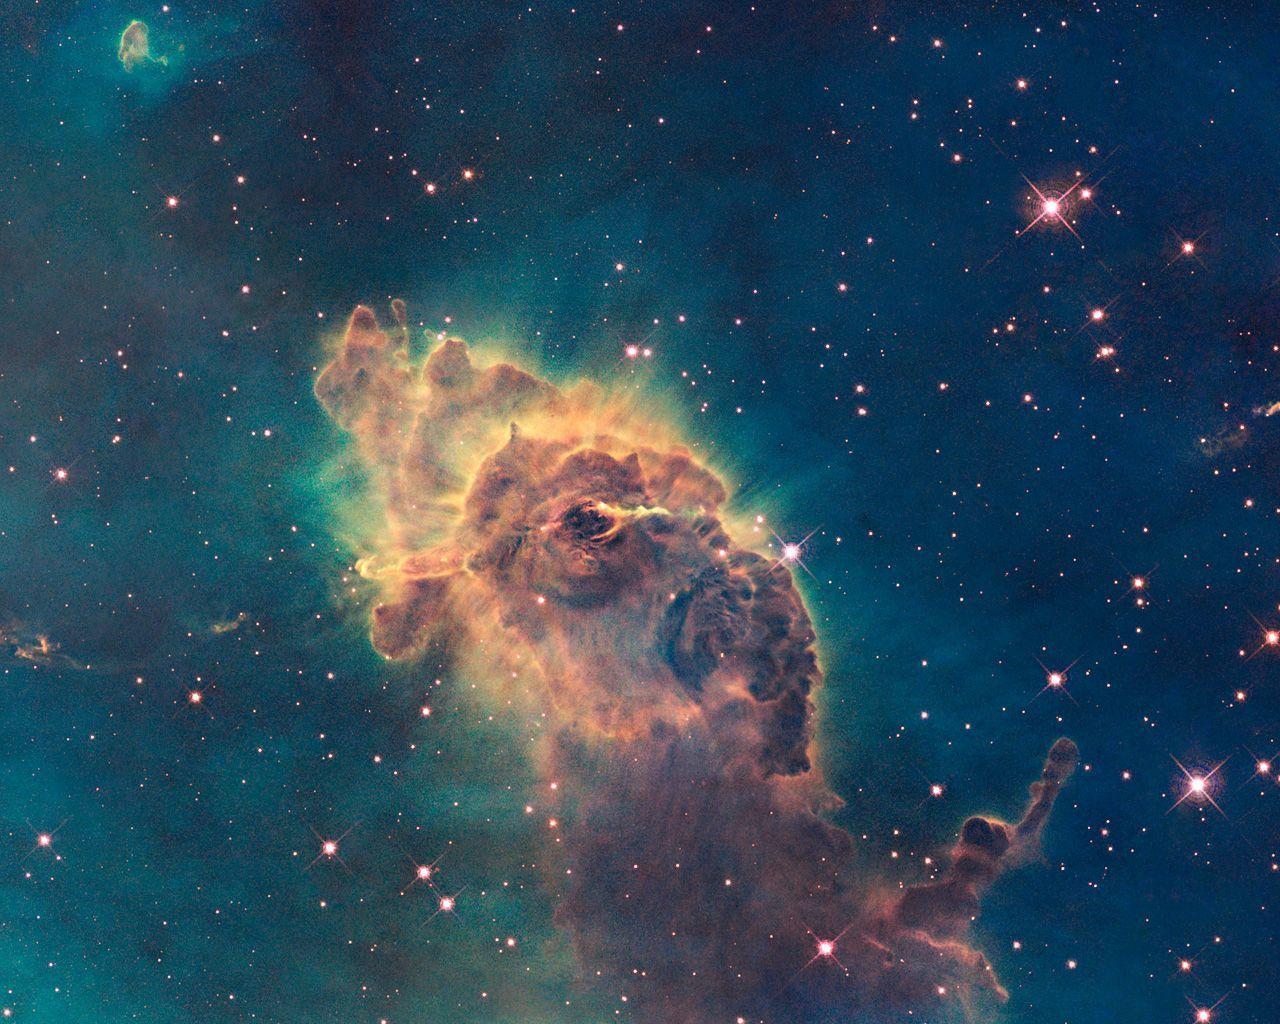 WFC3 visible image of the Carina Nebula. ESA